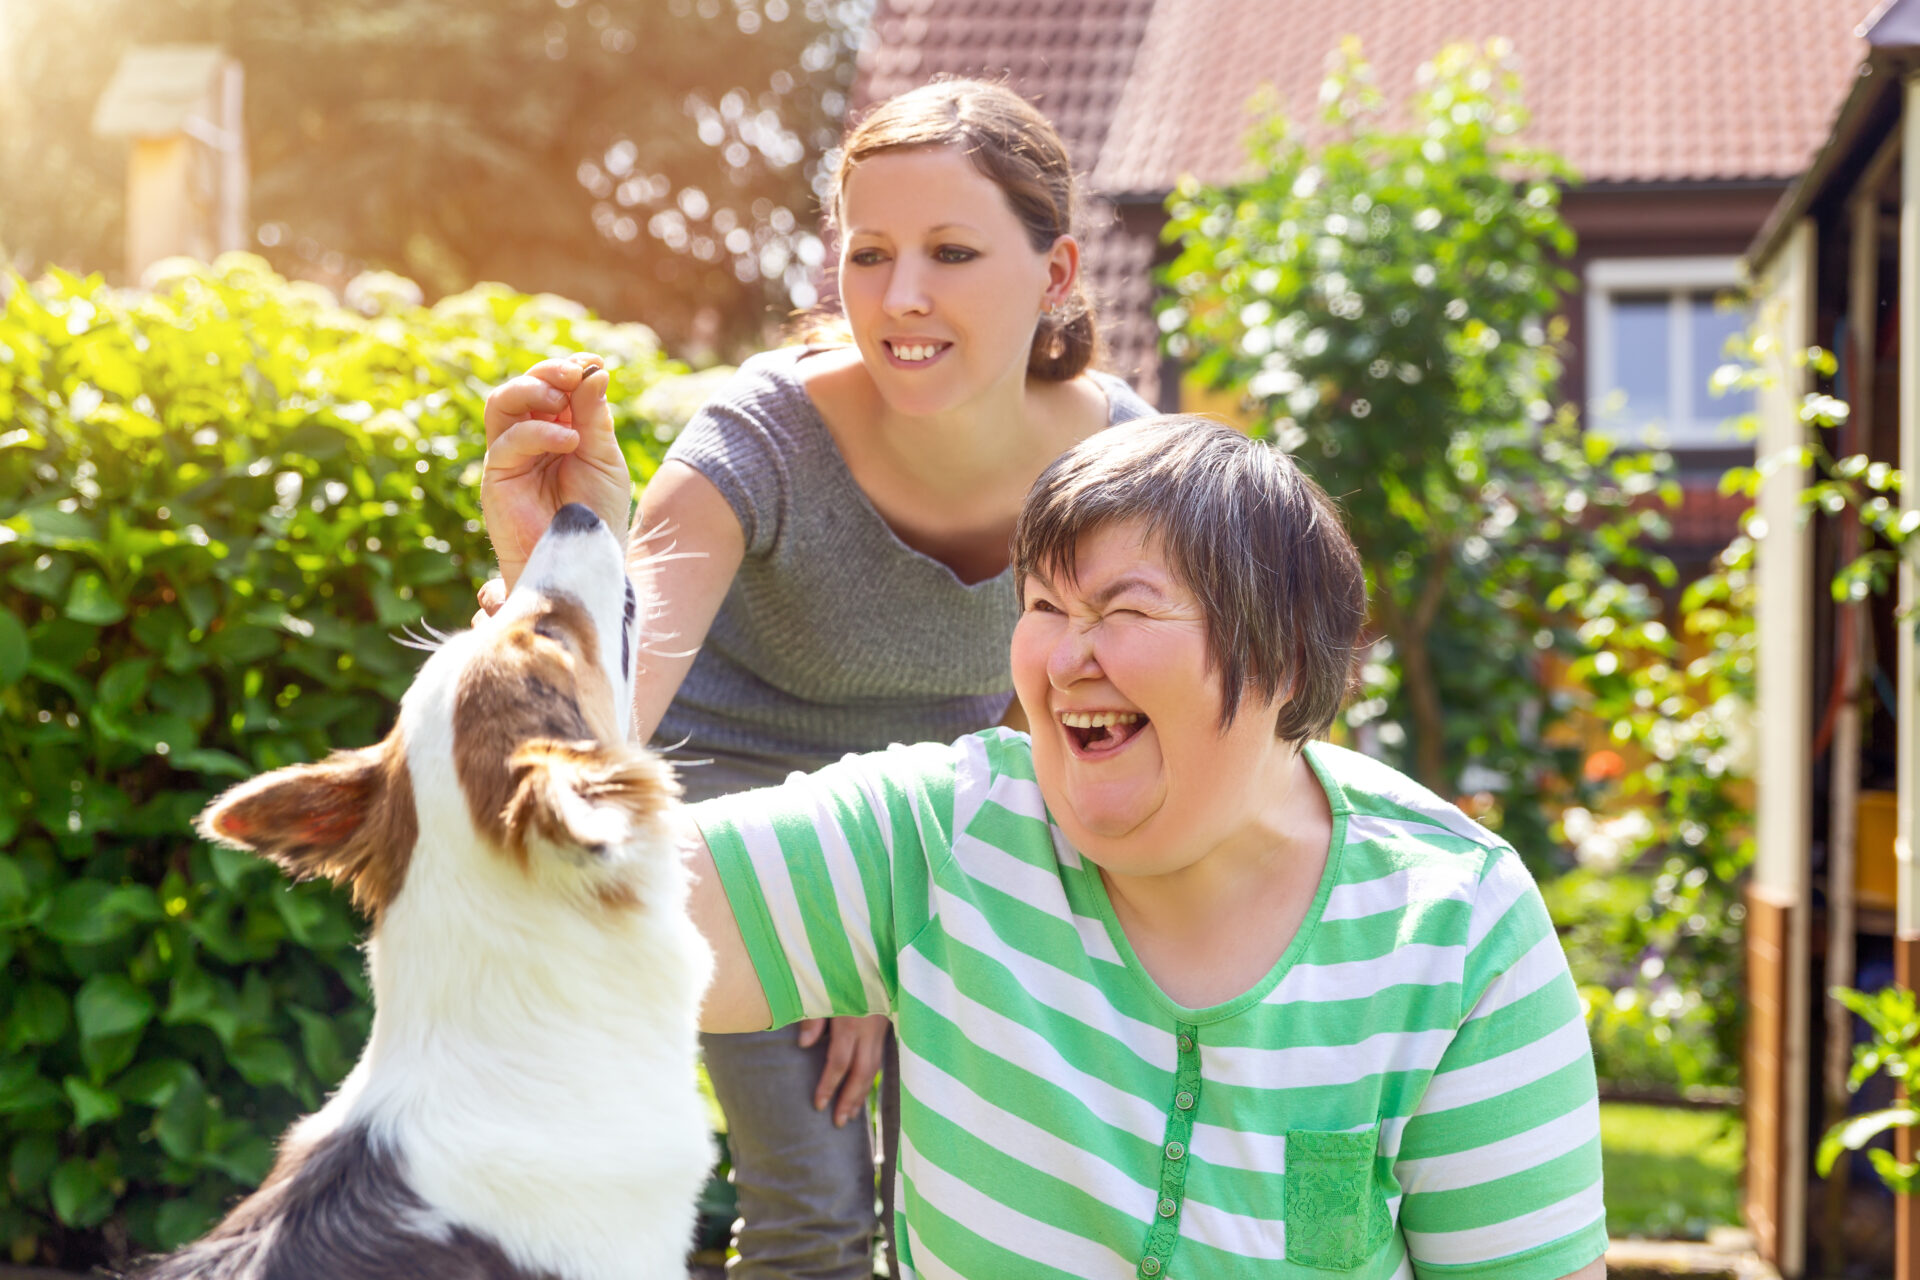 EIne Frau mit Down-Syndrom und ihre Therapeutin füttern einen Hund.